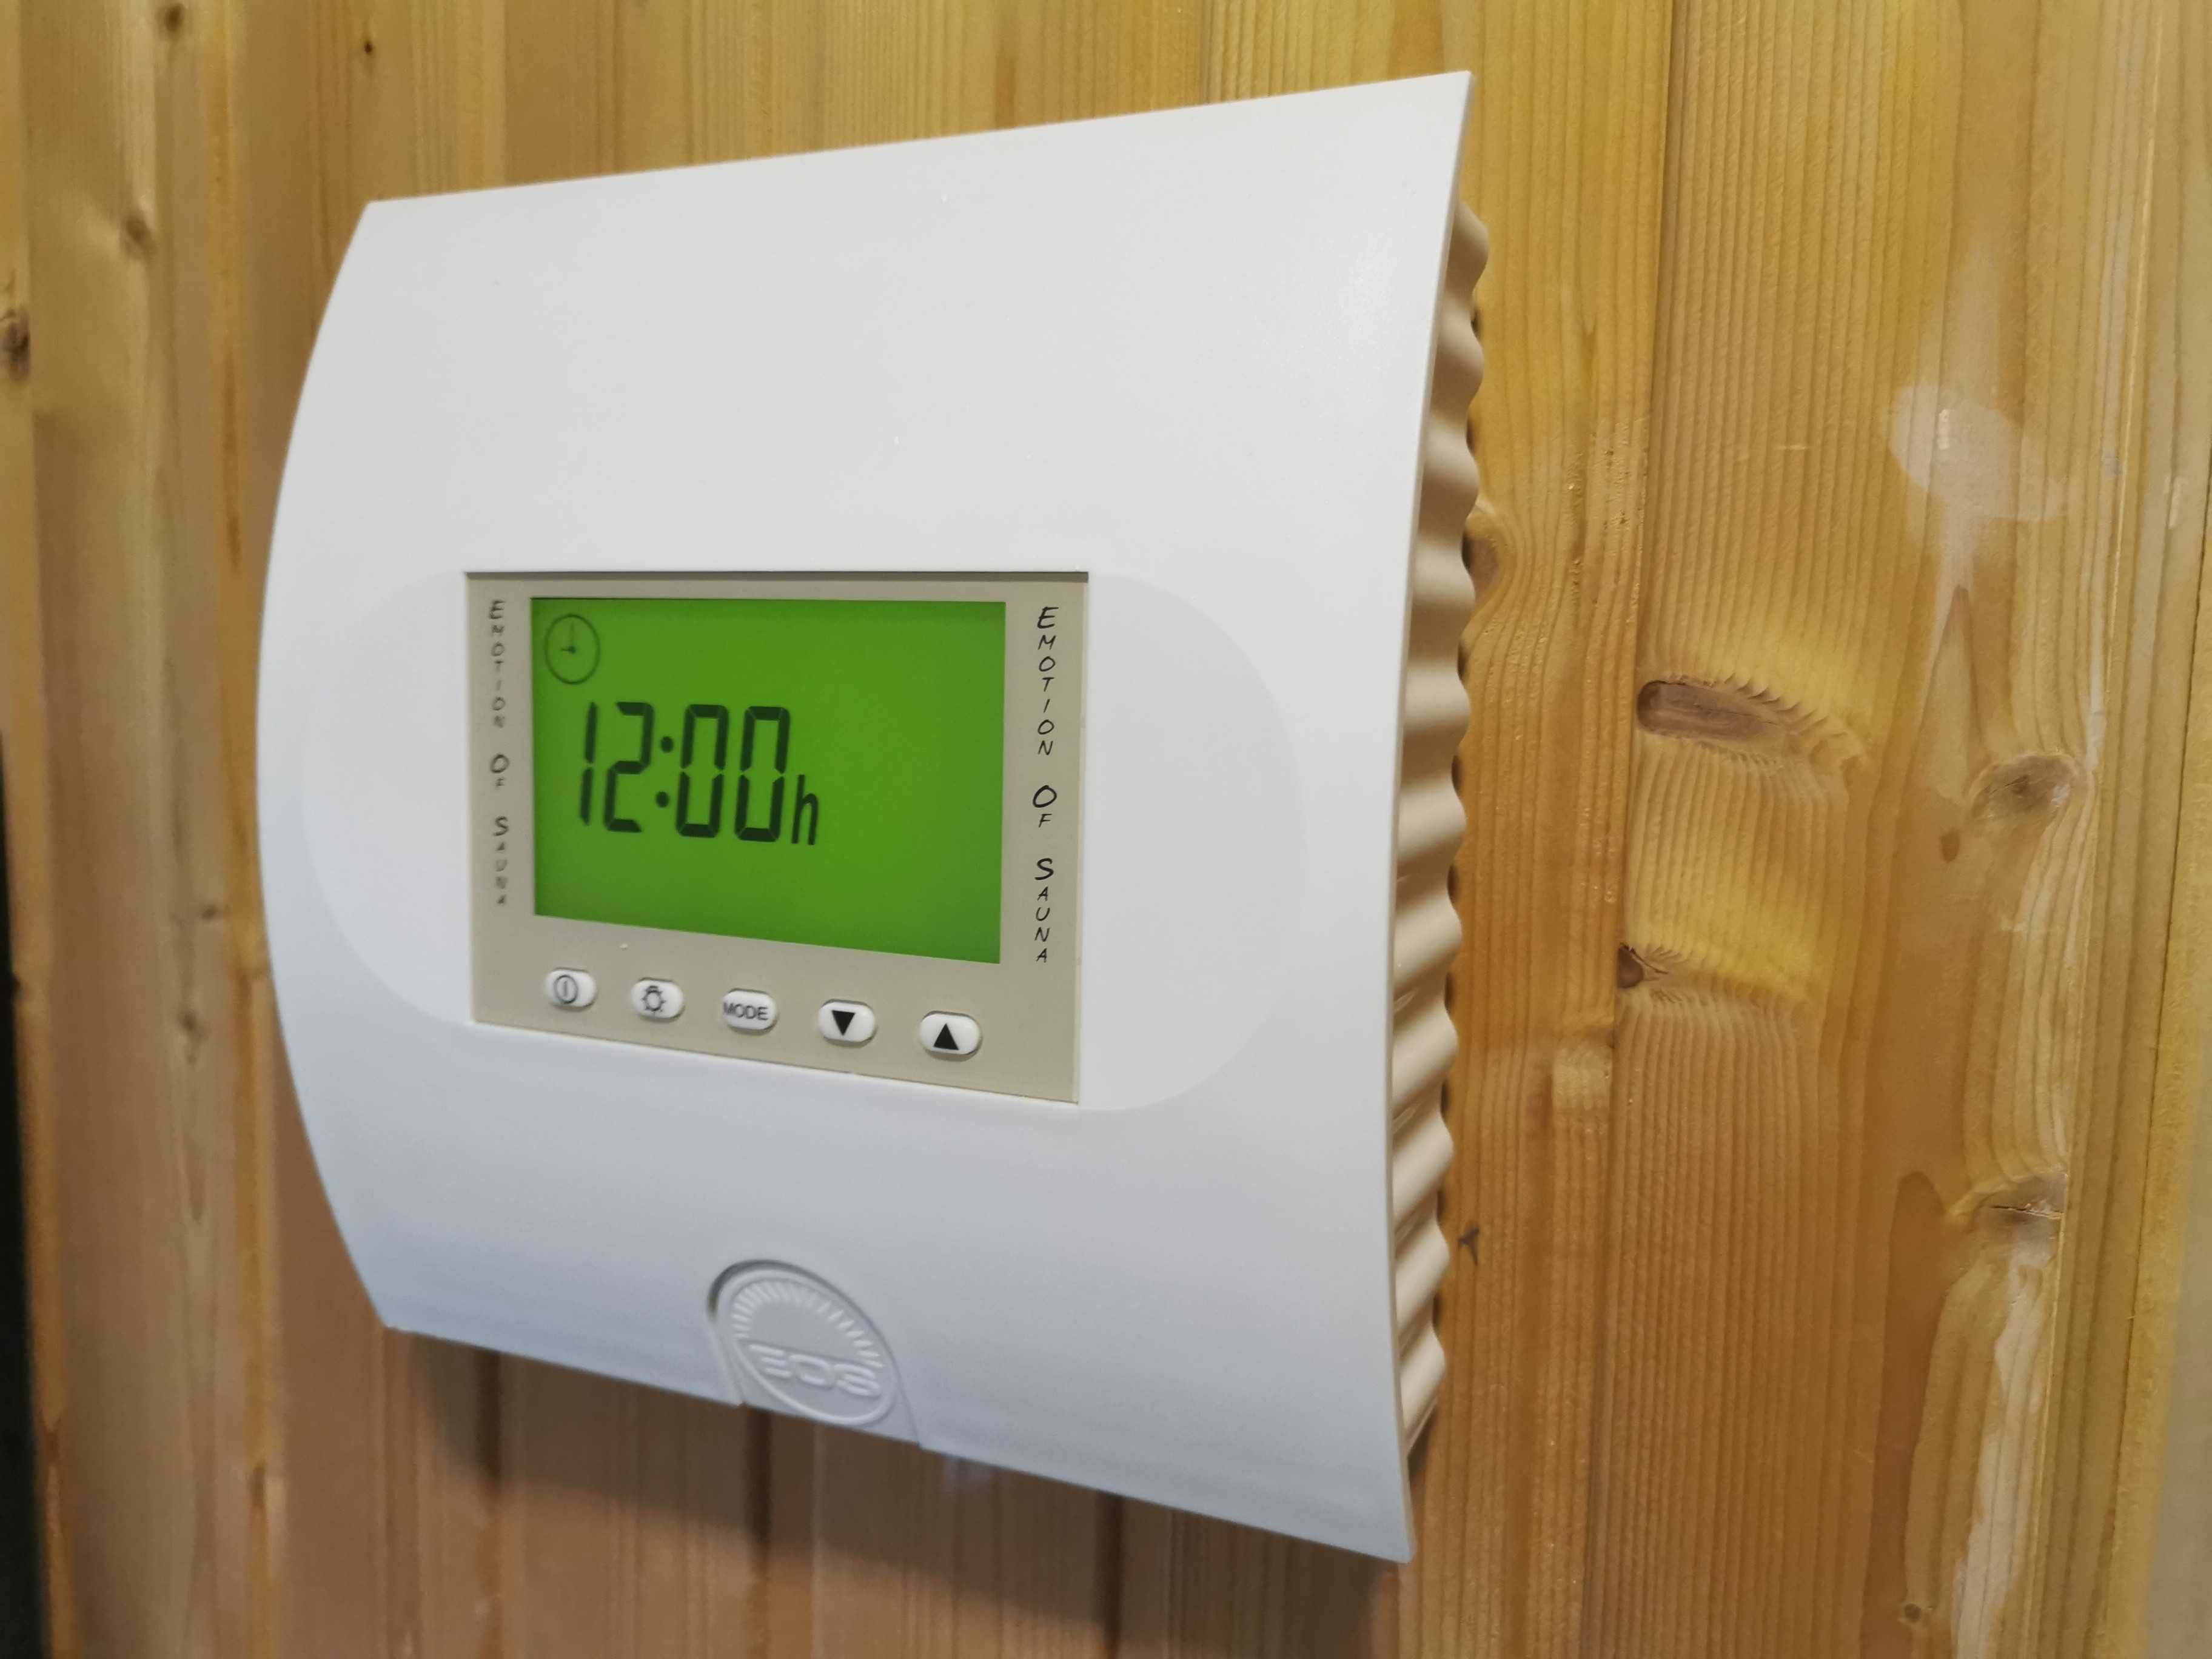 Sauna fińska (sucha) i mokra (parowa) 6 kW 2 głośniki DO DOMU